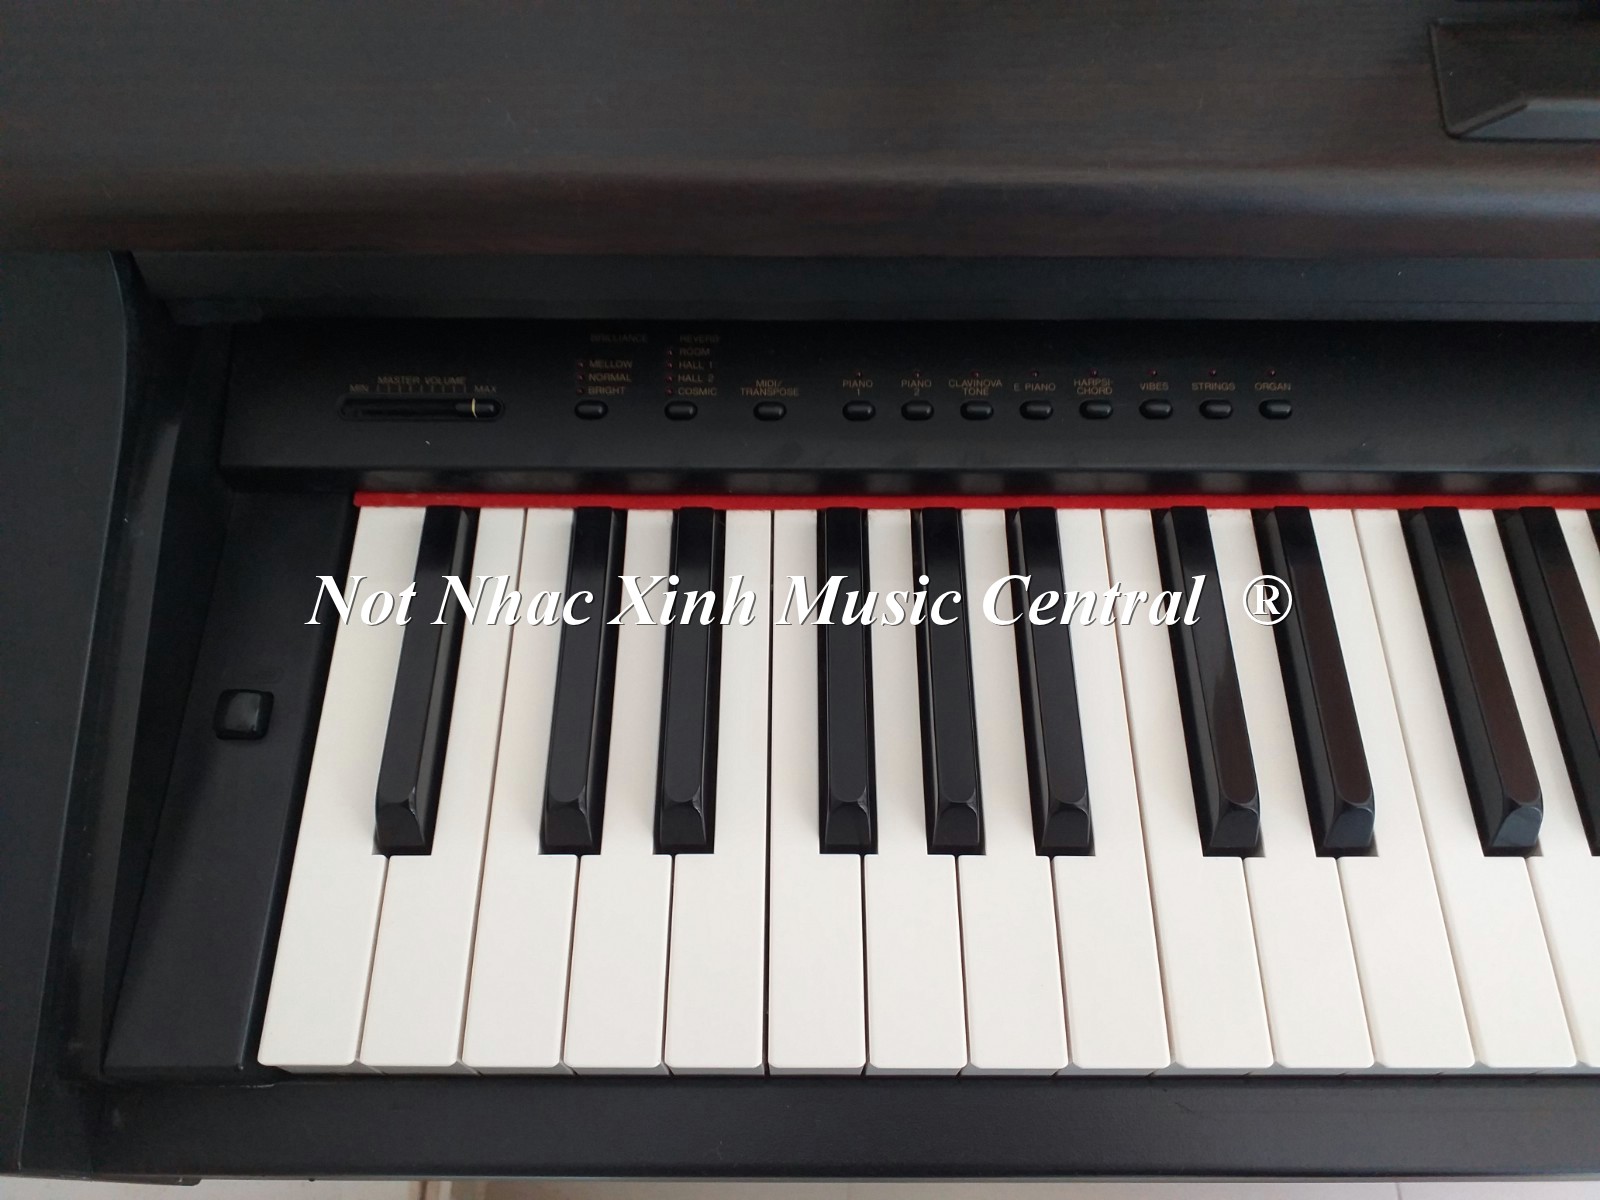 Đàn piano điện Yamaha CLP-123